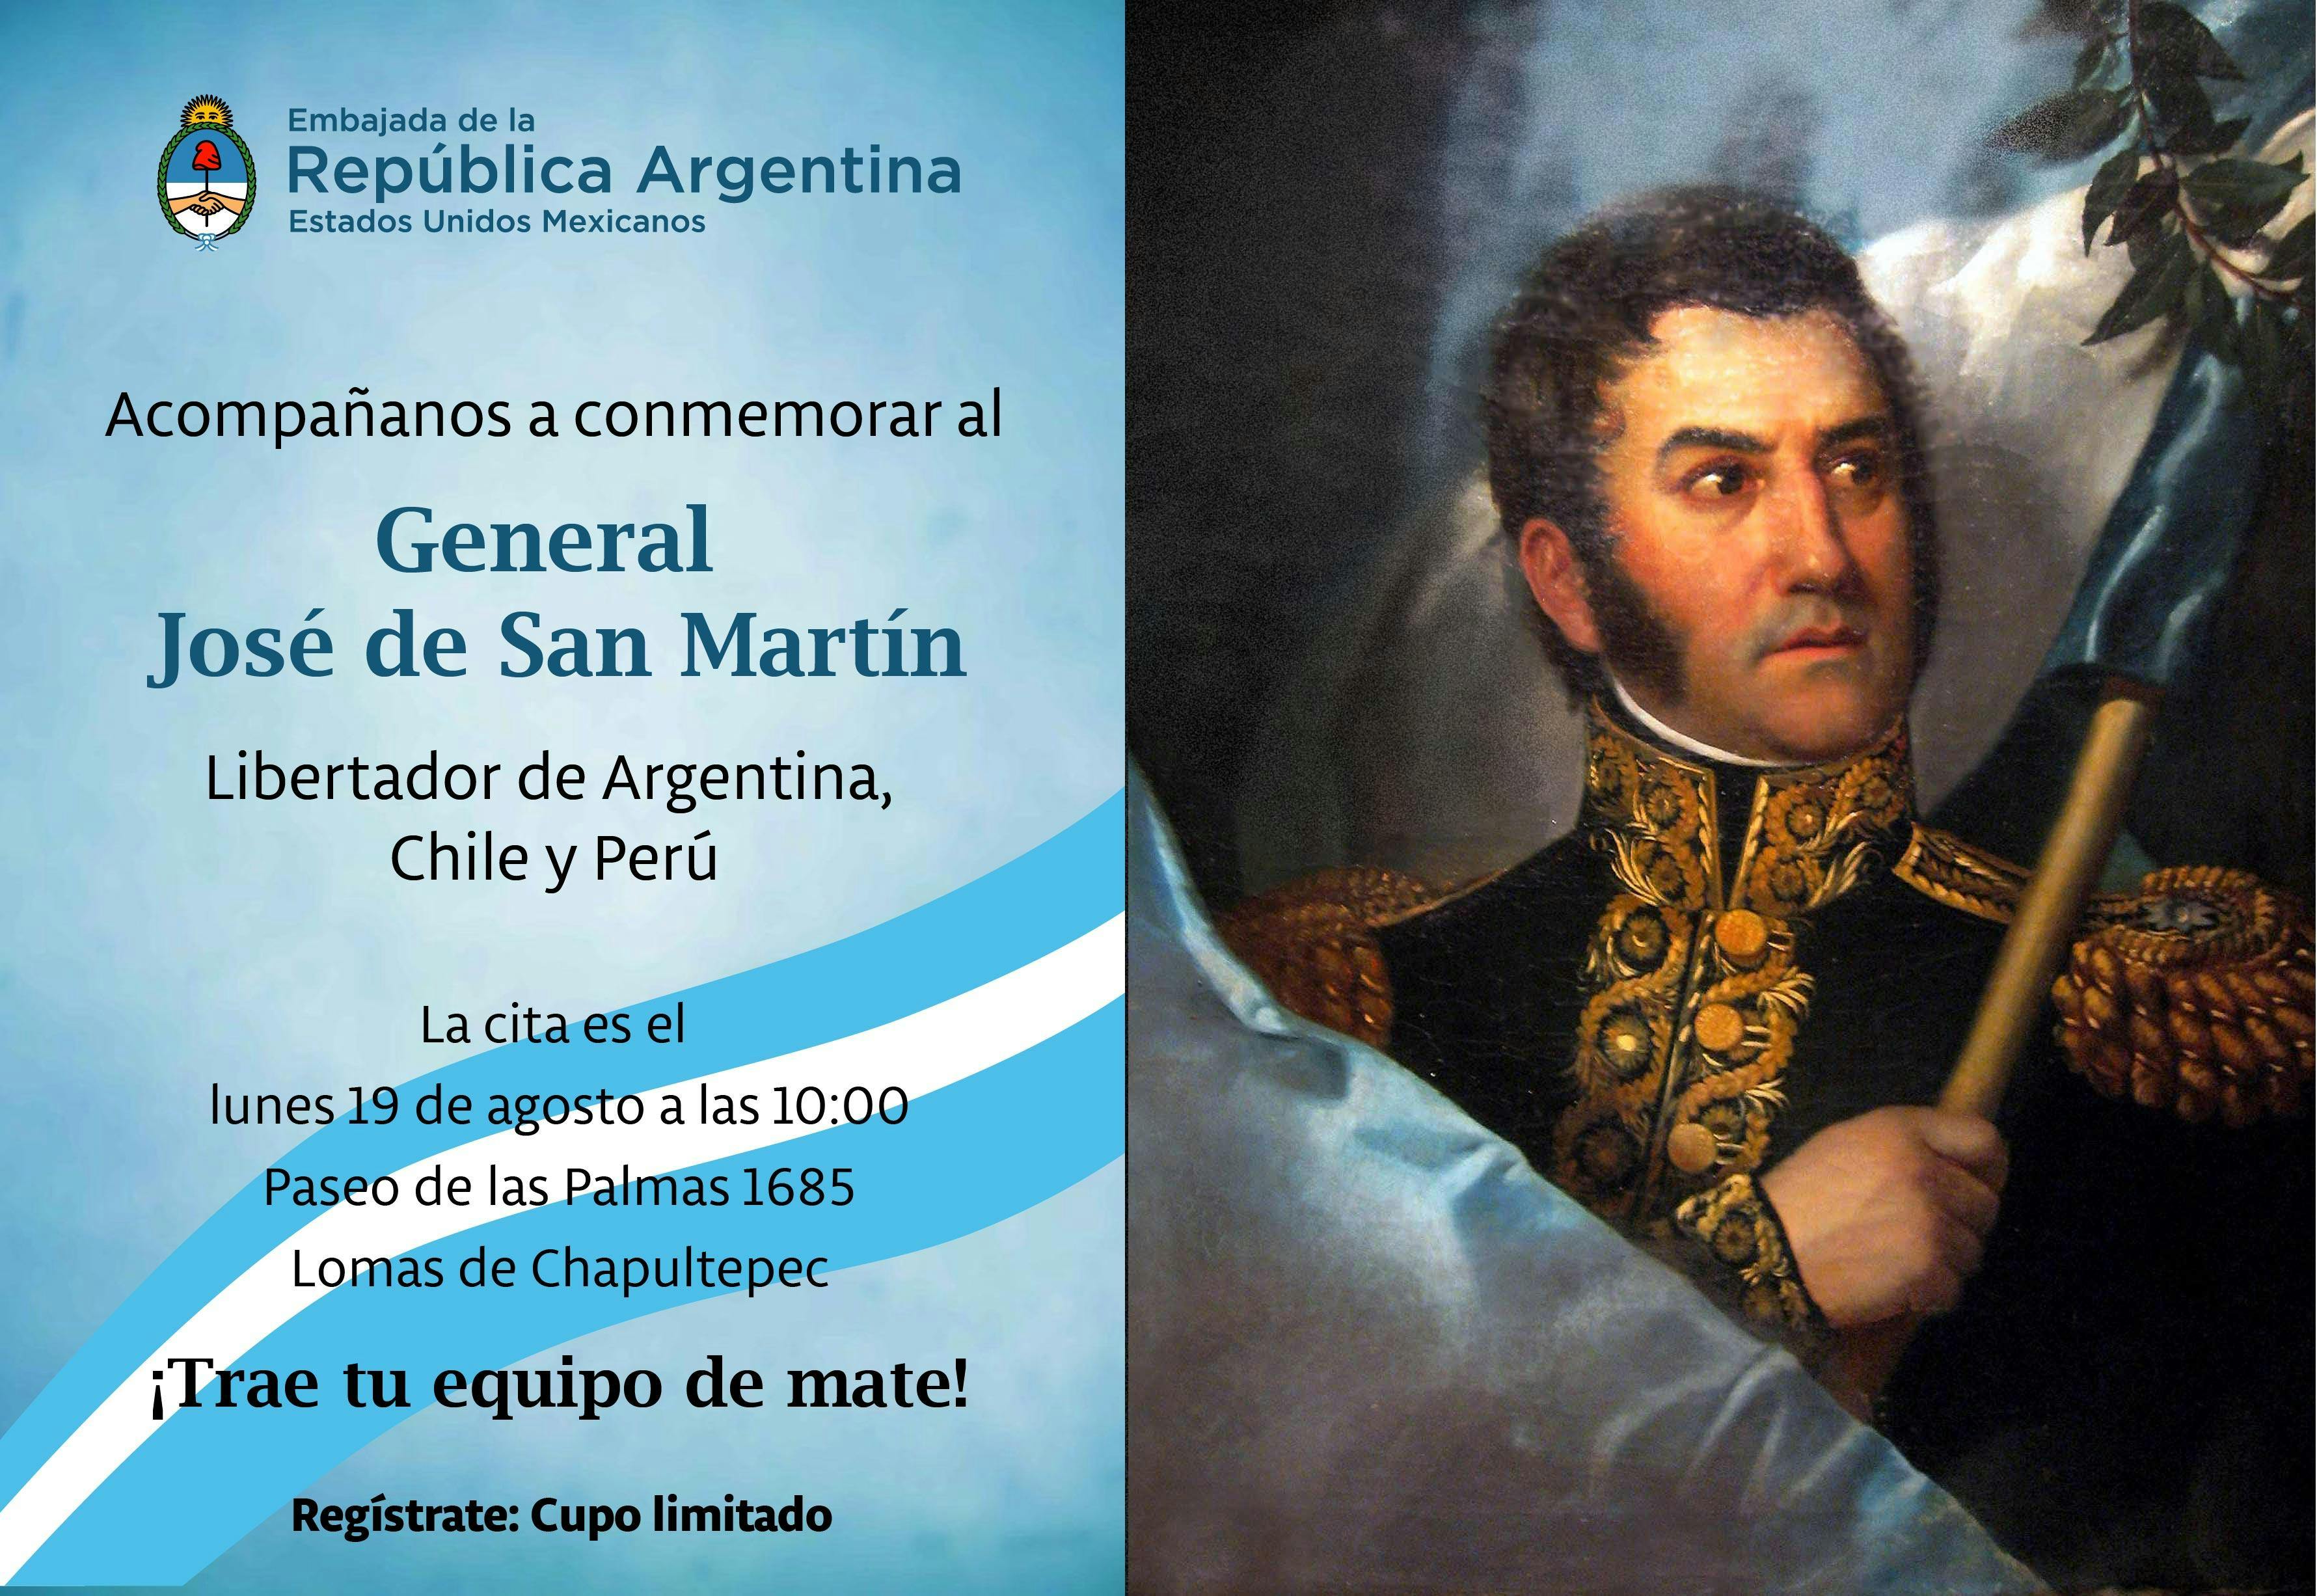 Conmemorar al General Jose de San Martin